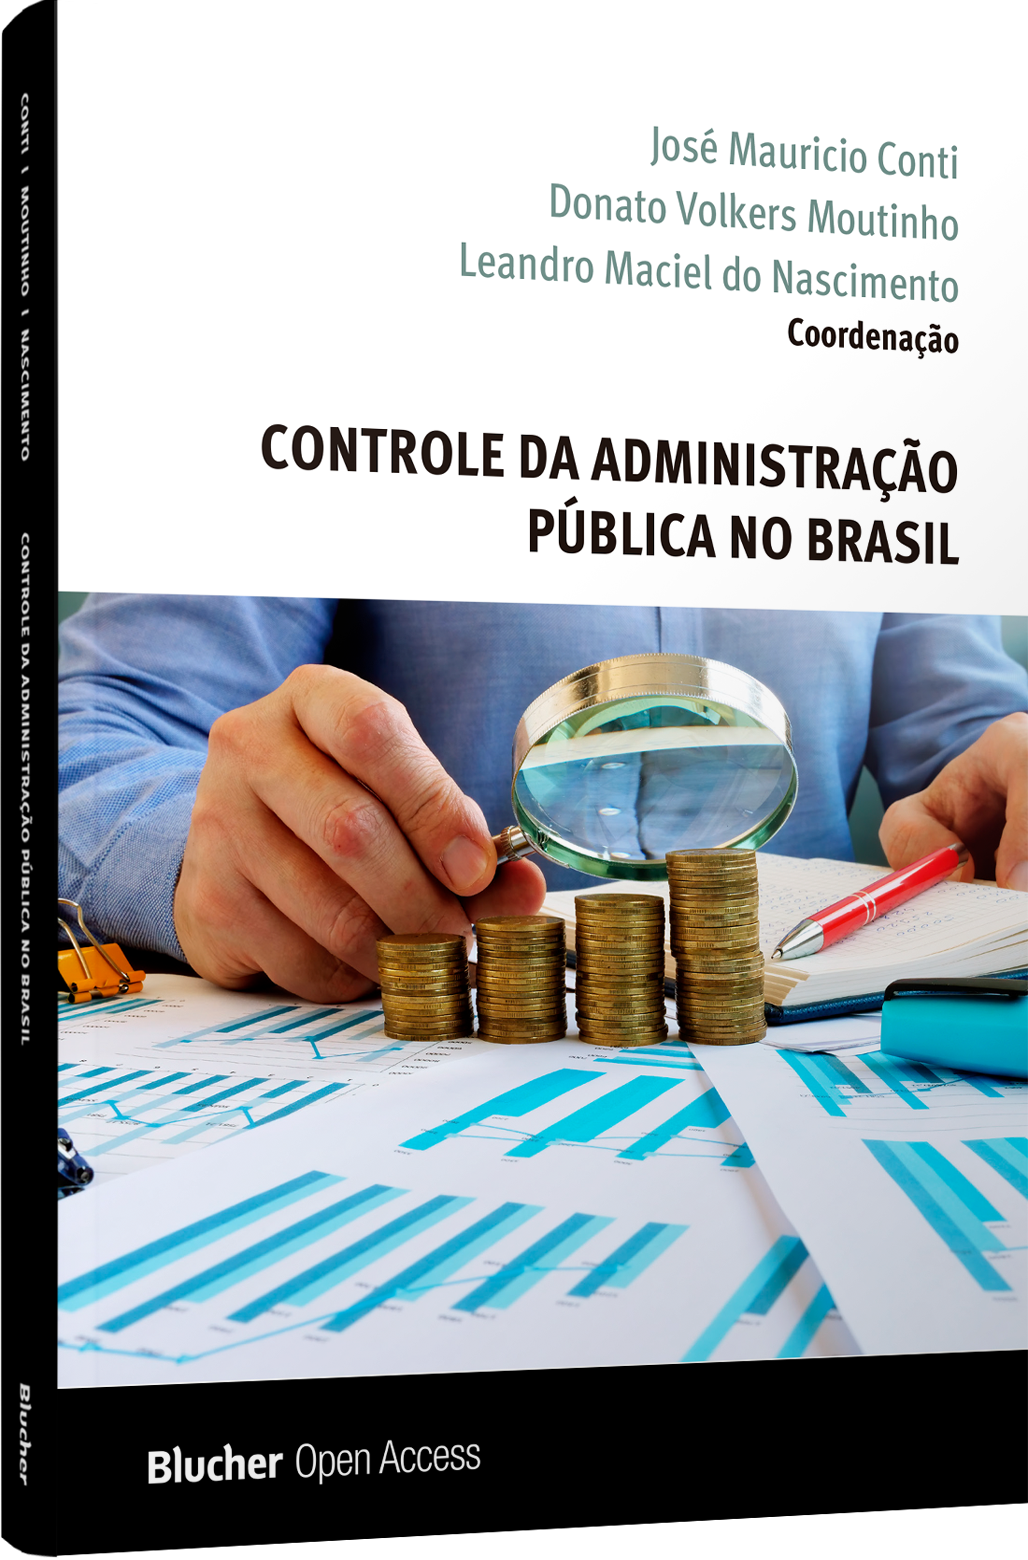 Controle da Administração Pública no Brasil